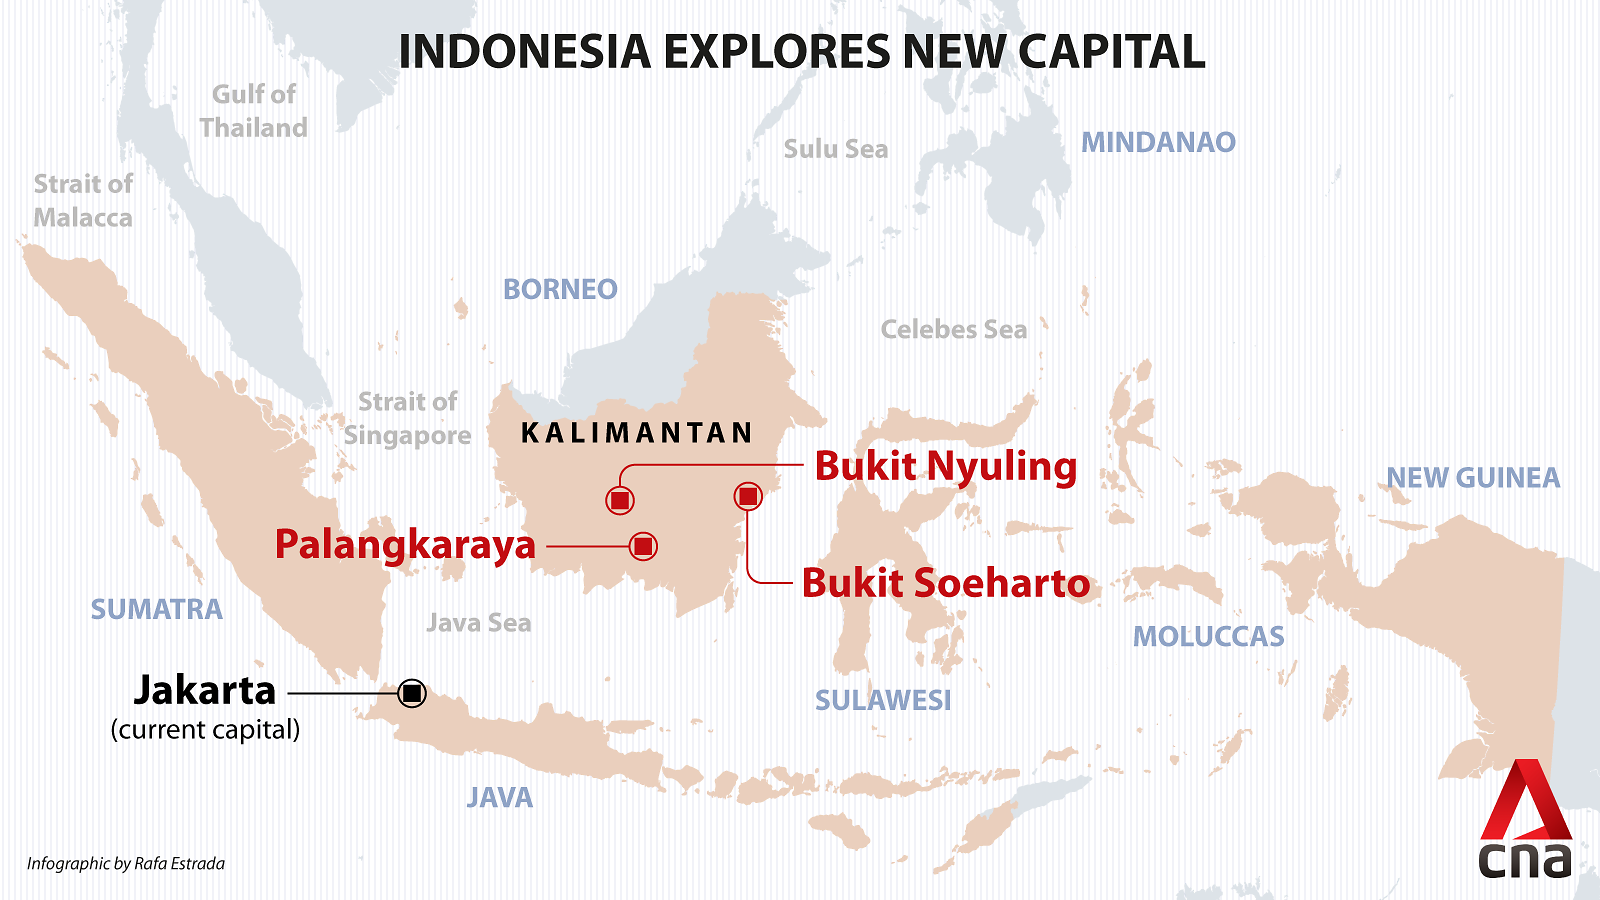 Thủ đô mới Đông Kalimantan: Đông Kalimantan chính là nơi mà Indonesia sẽ chuyển thủ đô của mình vào năm